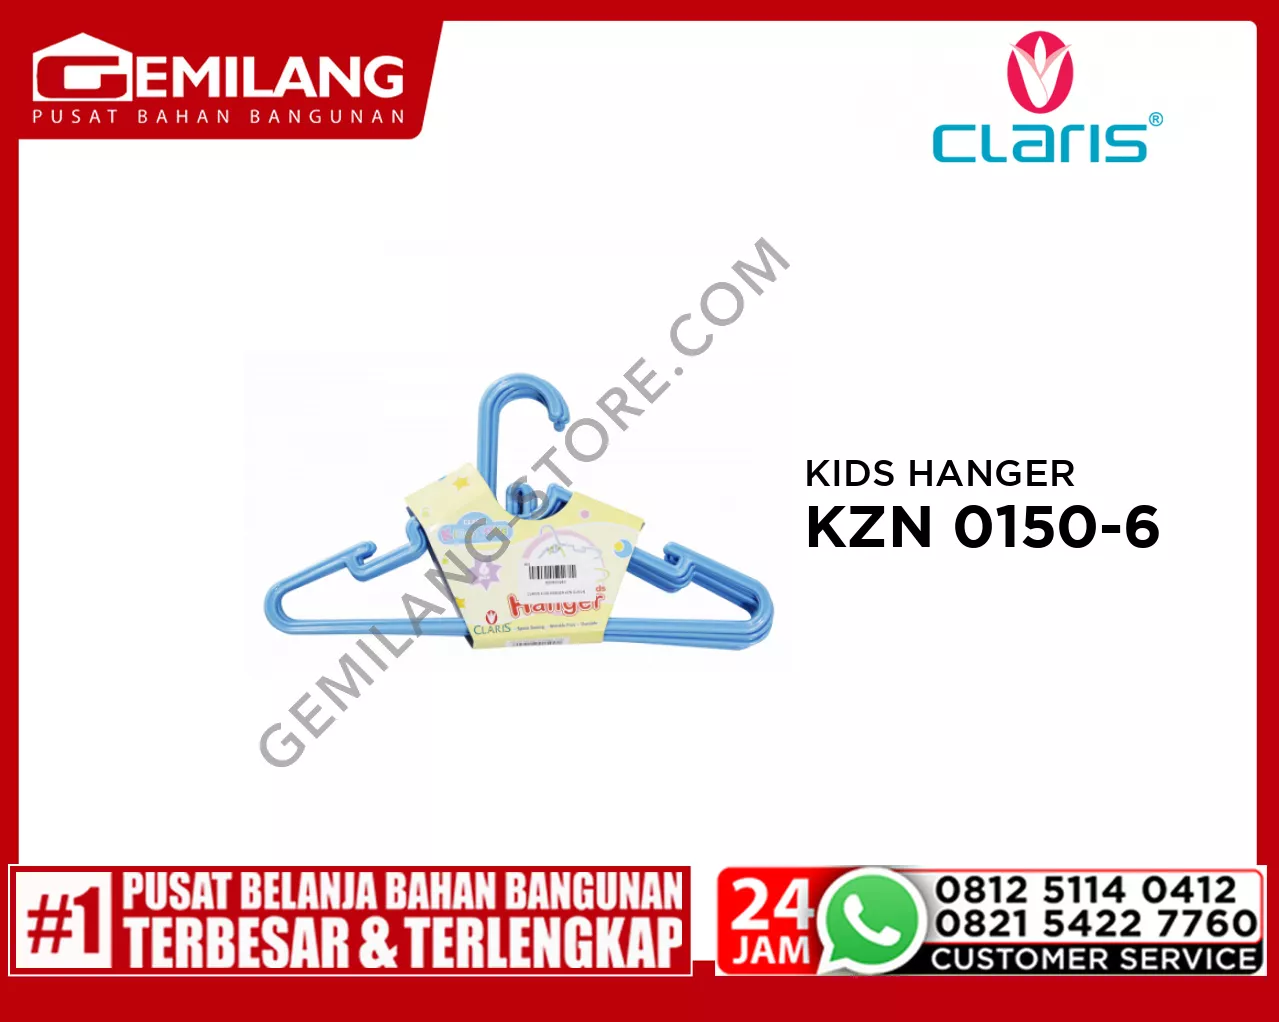 CLARIS KIDS HANGER KZN 0150-6